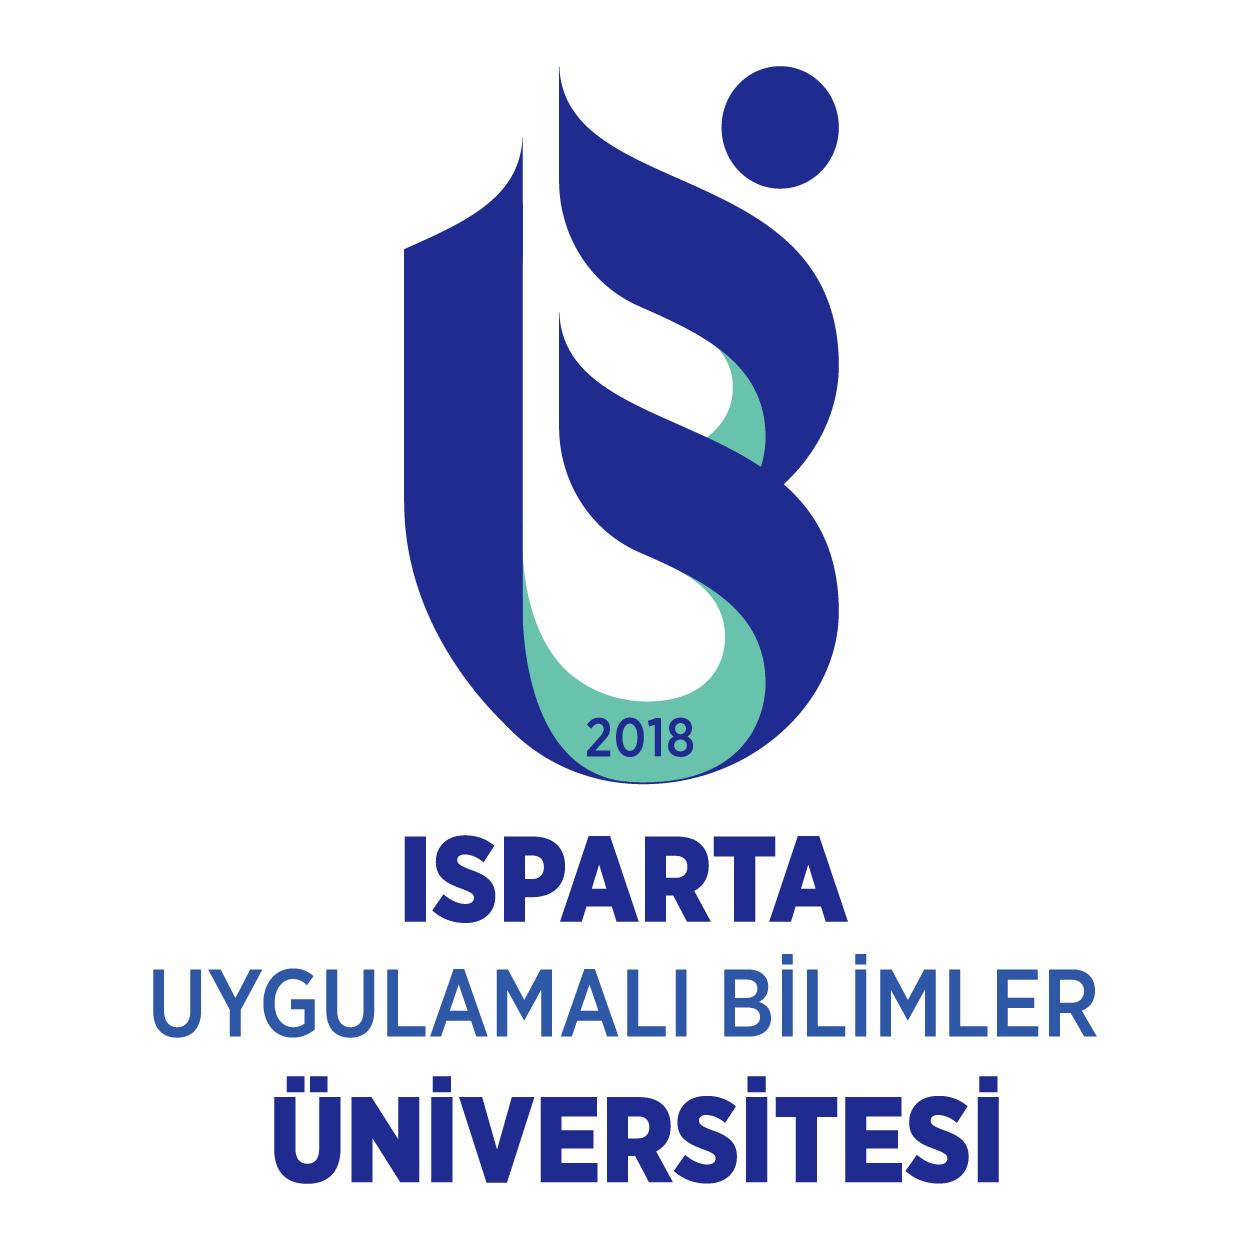 Isparta Uygulamalı Bilimler Üniversitesi Logo png